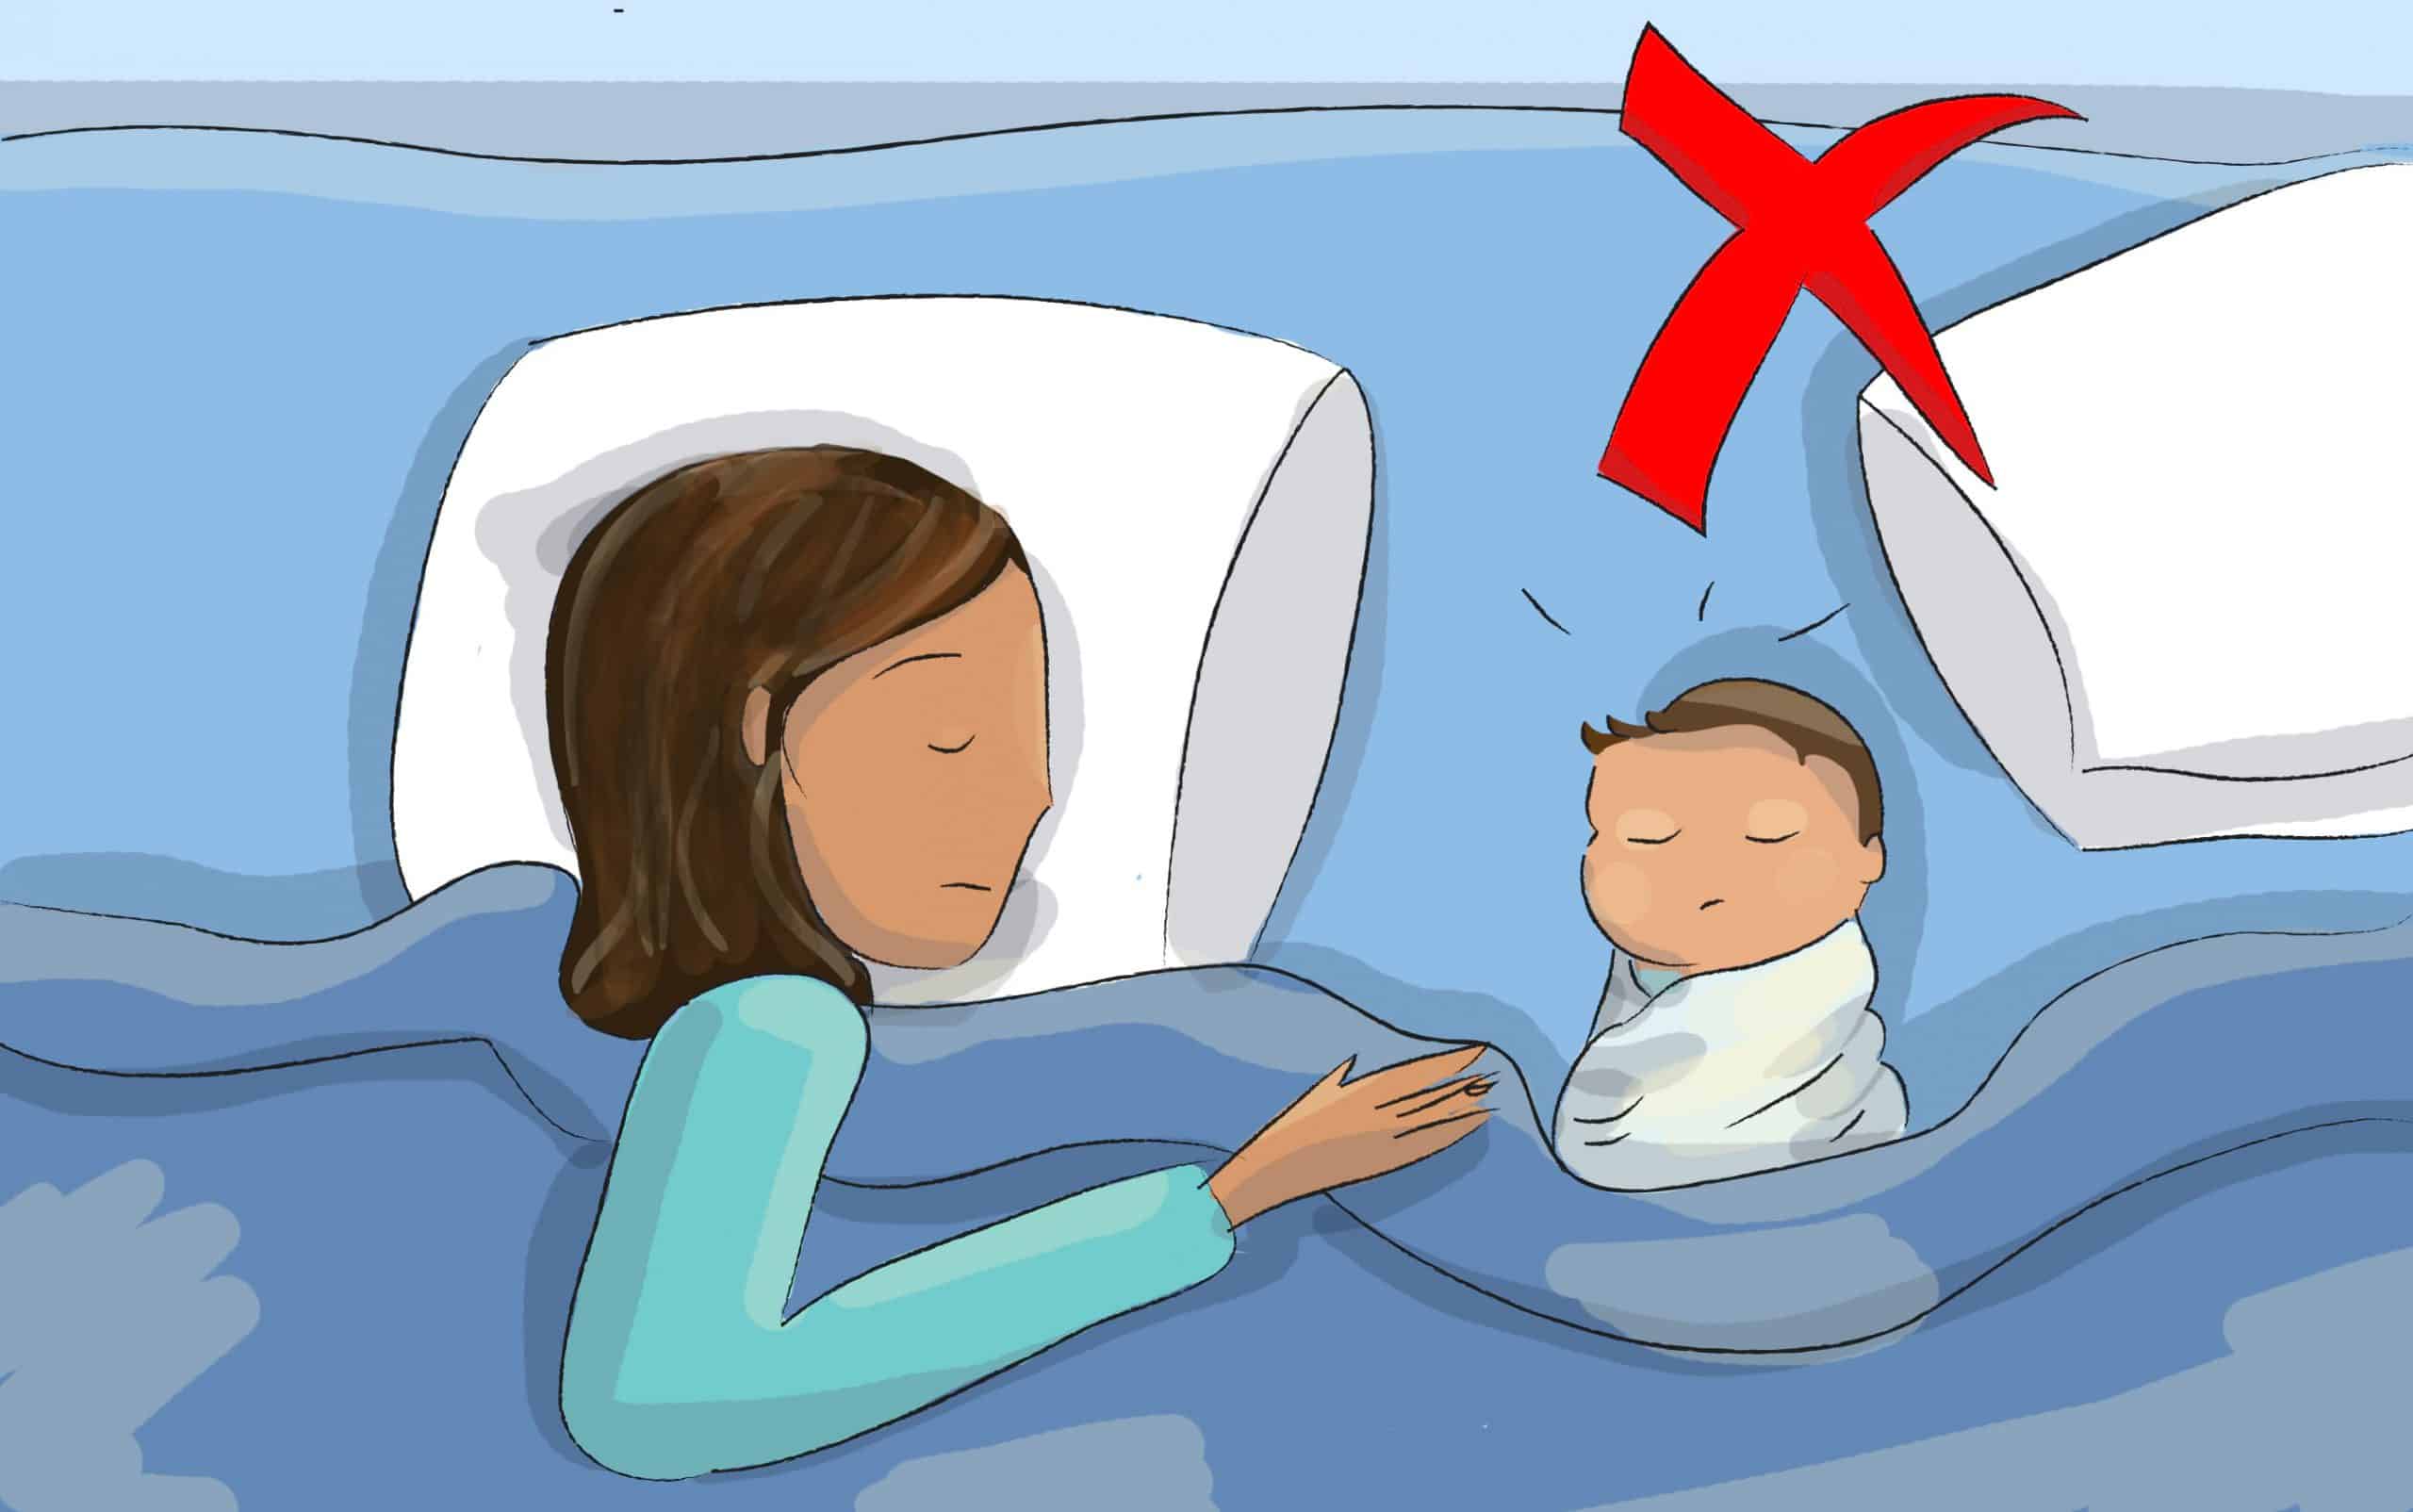 אם אתם ישנים עם תינוקכם בלינה משותפת, אל תעטפו אותו